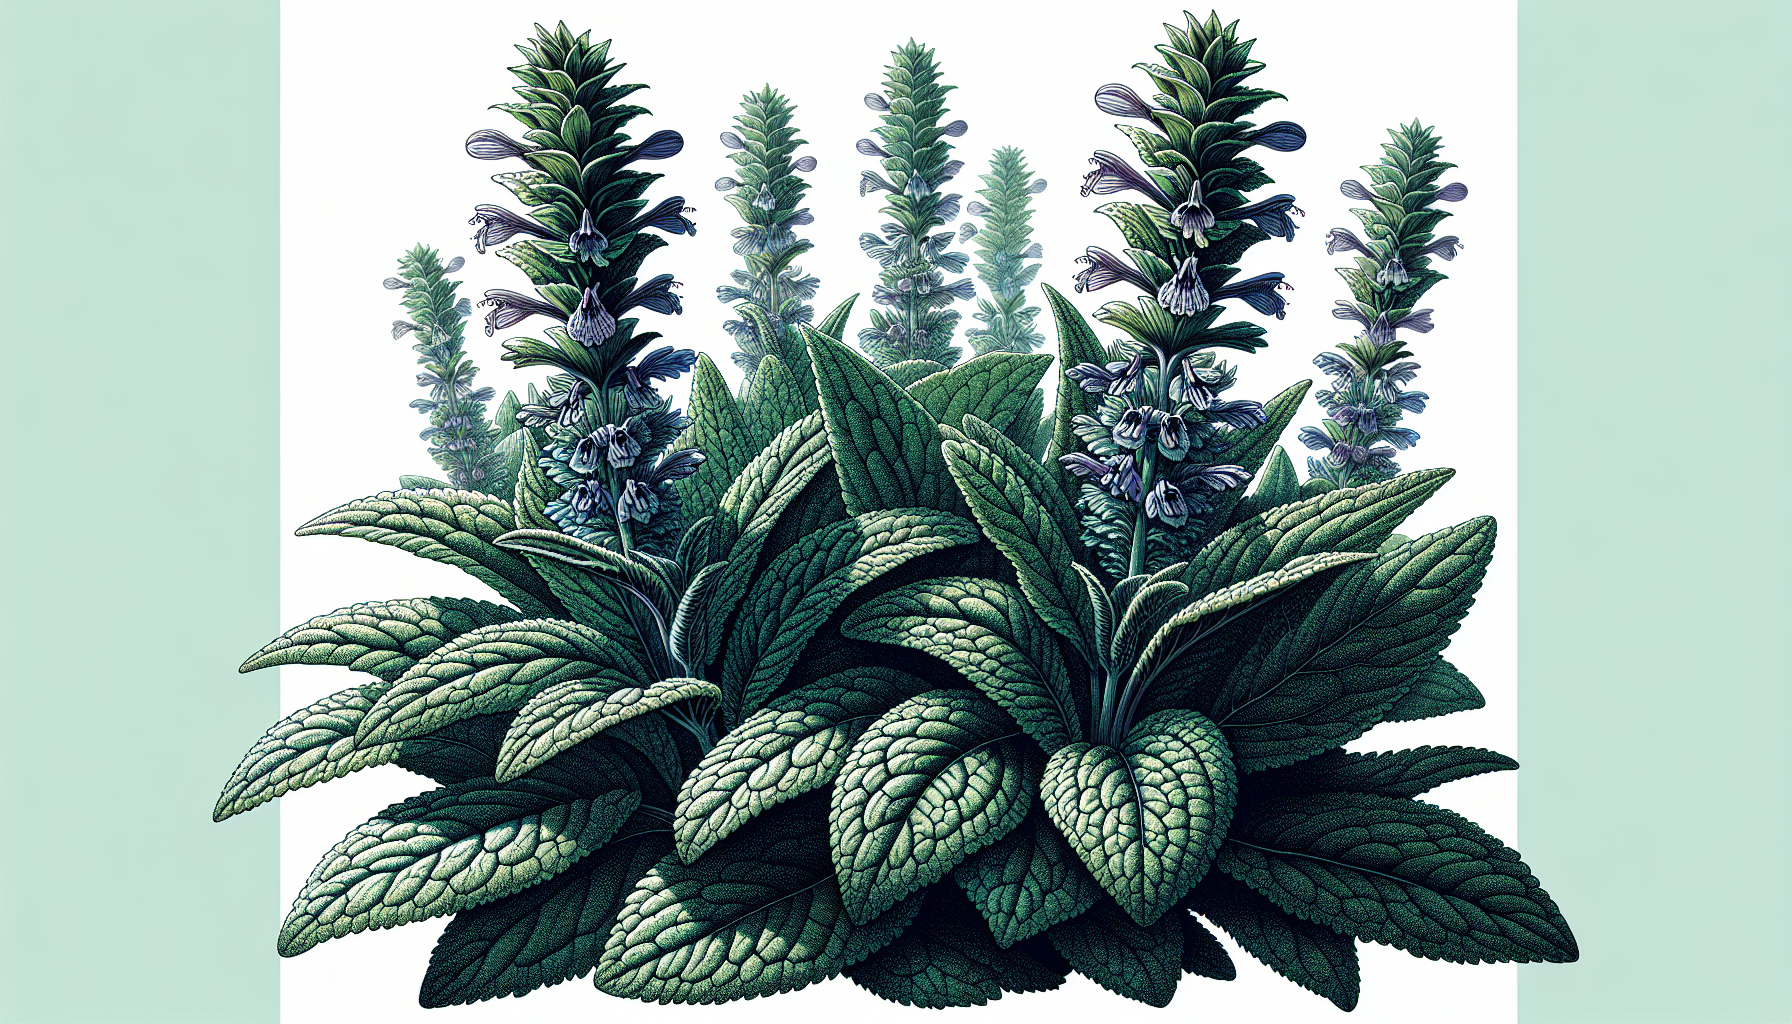 Illustration of Ajuga turkestanica plant